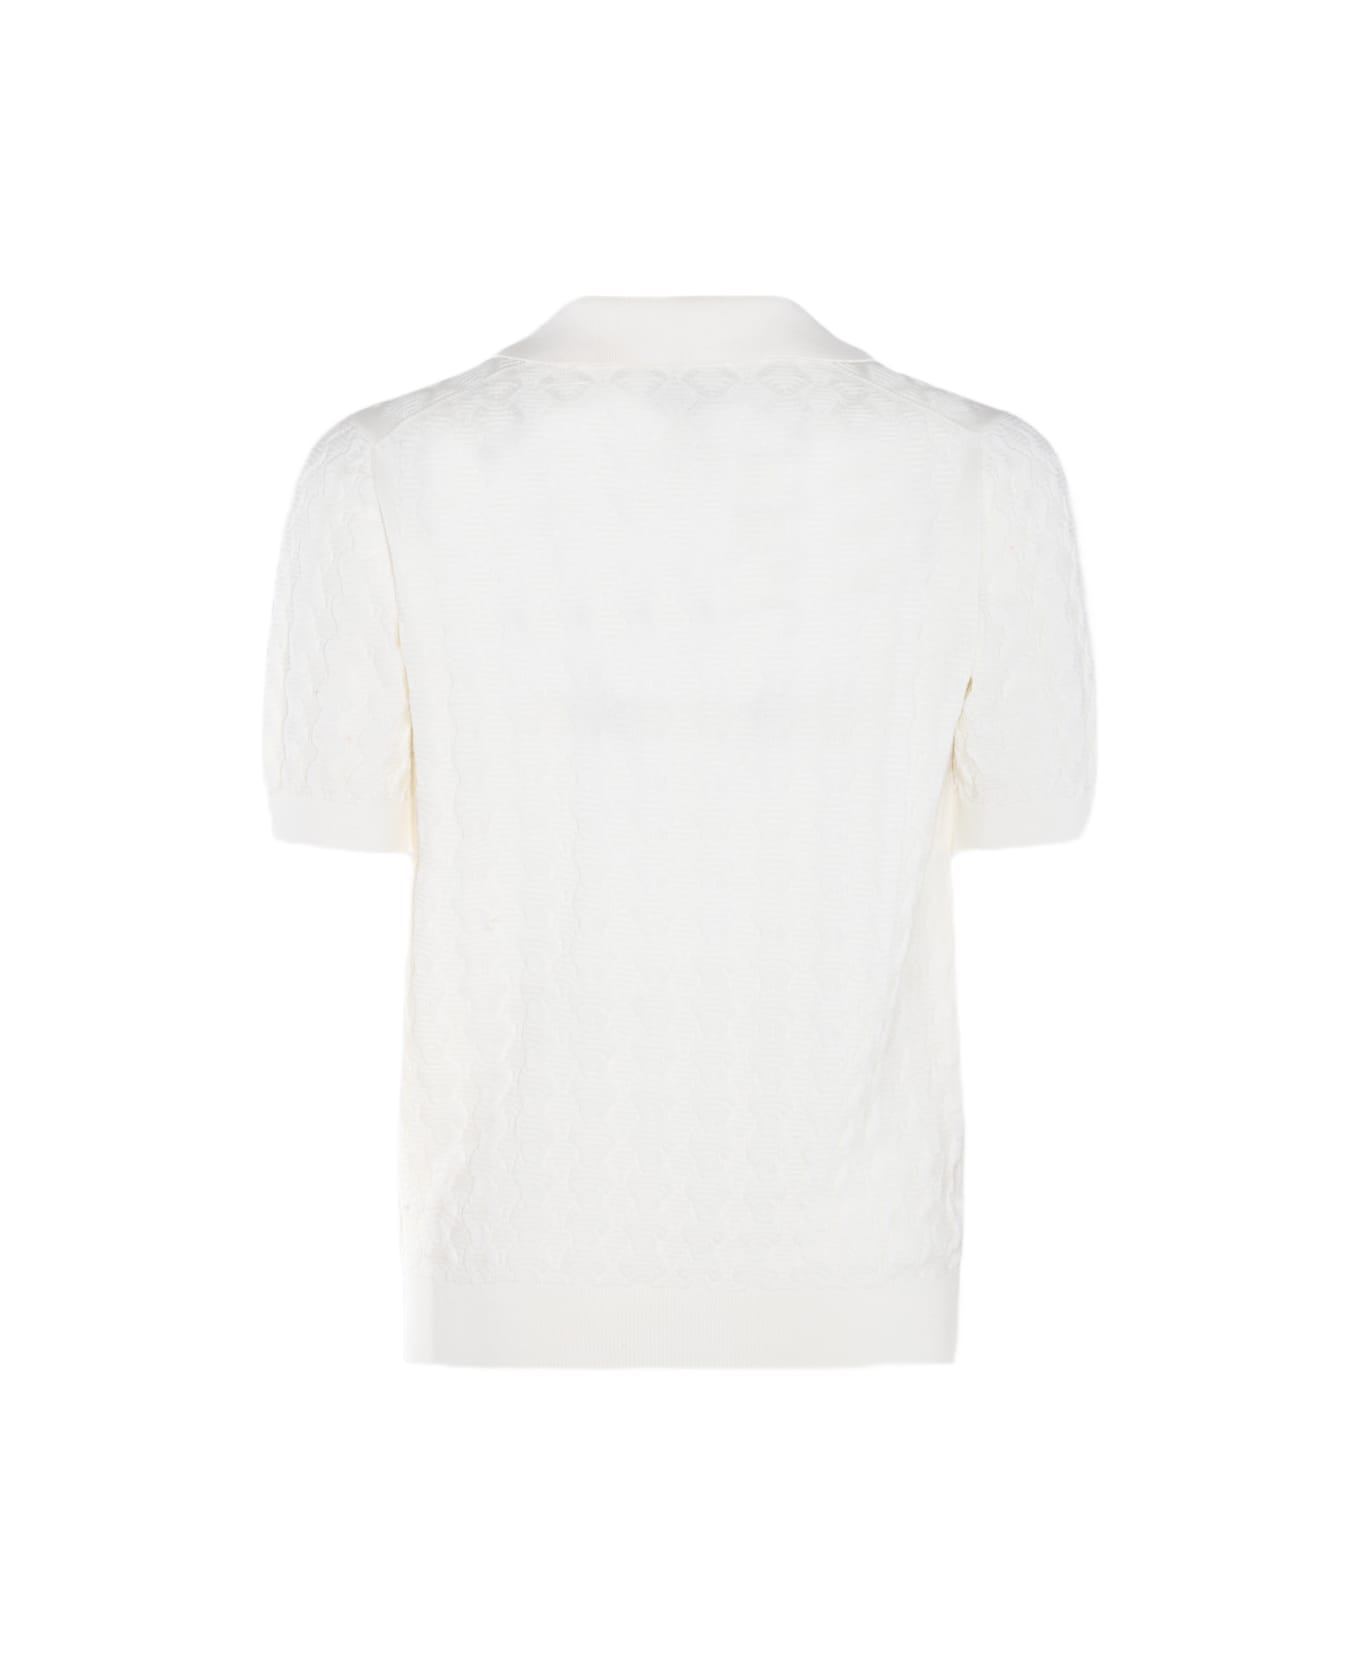 Piacenza Cashmere White Cotton Polo Shirt - White